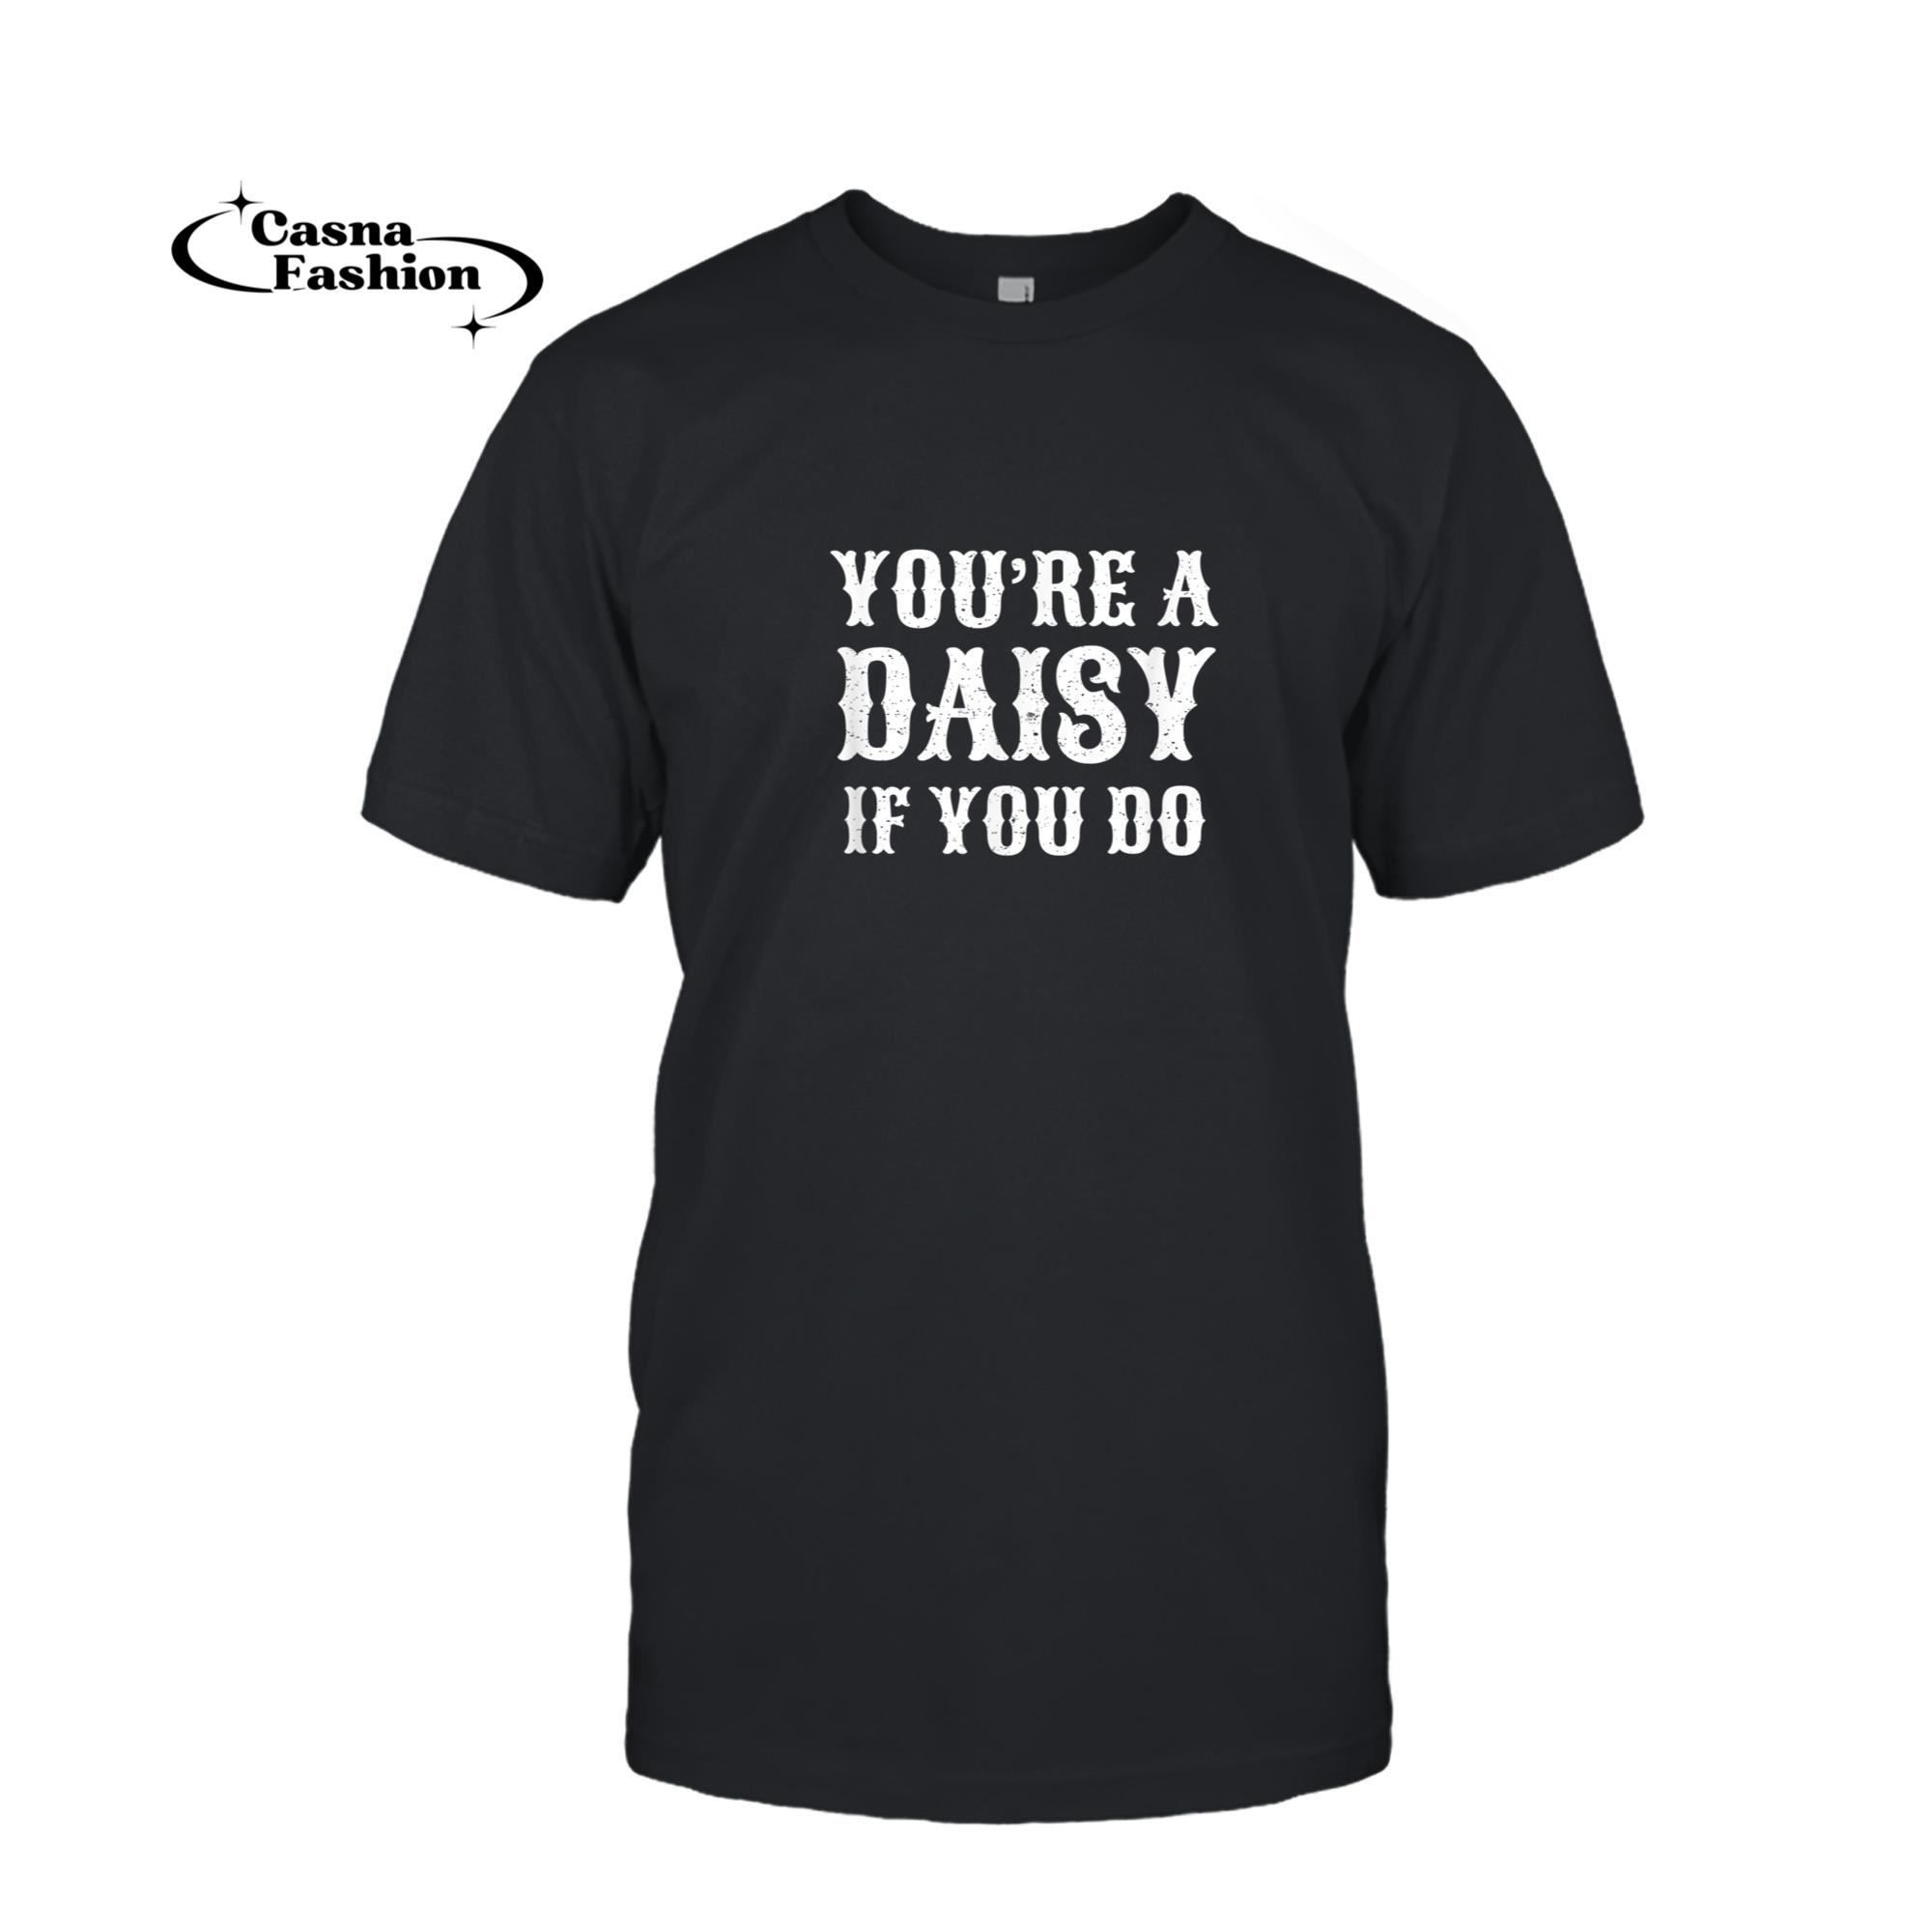 casnafashion_T-shirt_You're A Daisy If You Do Funny T-Shirt_T-shirt_Black